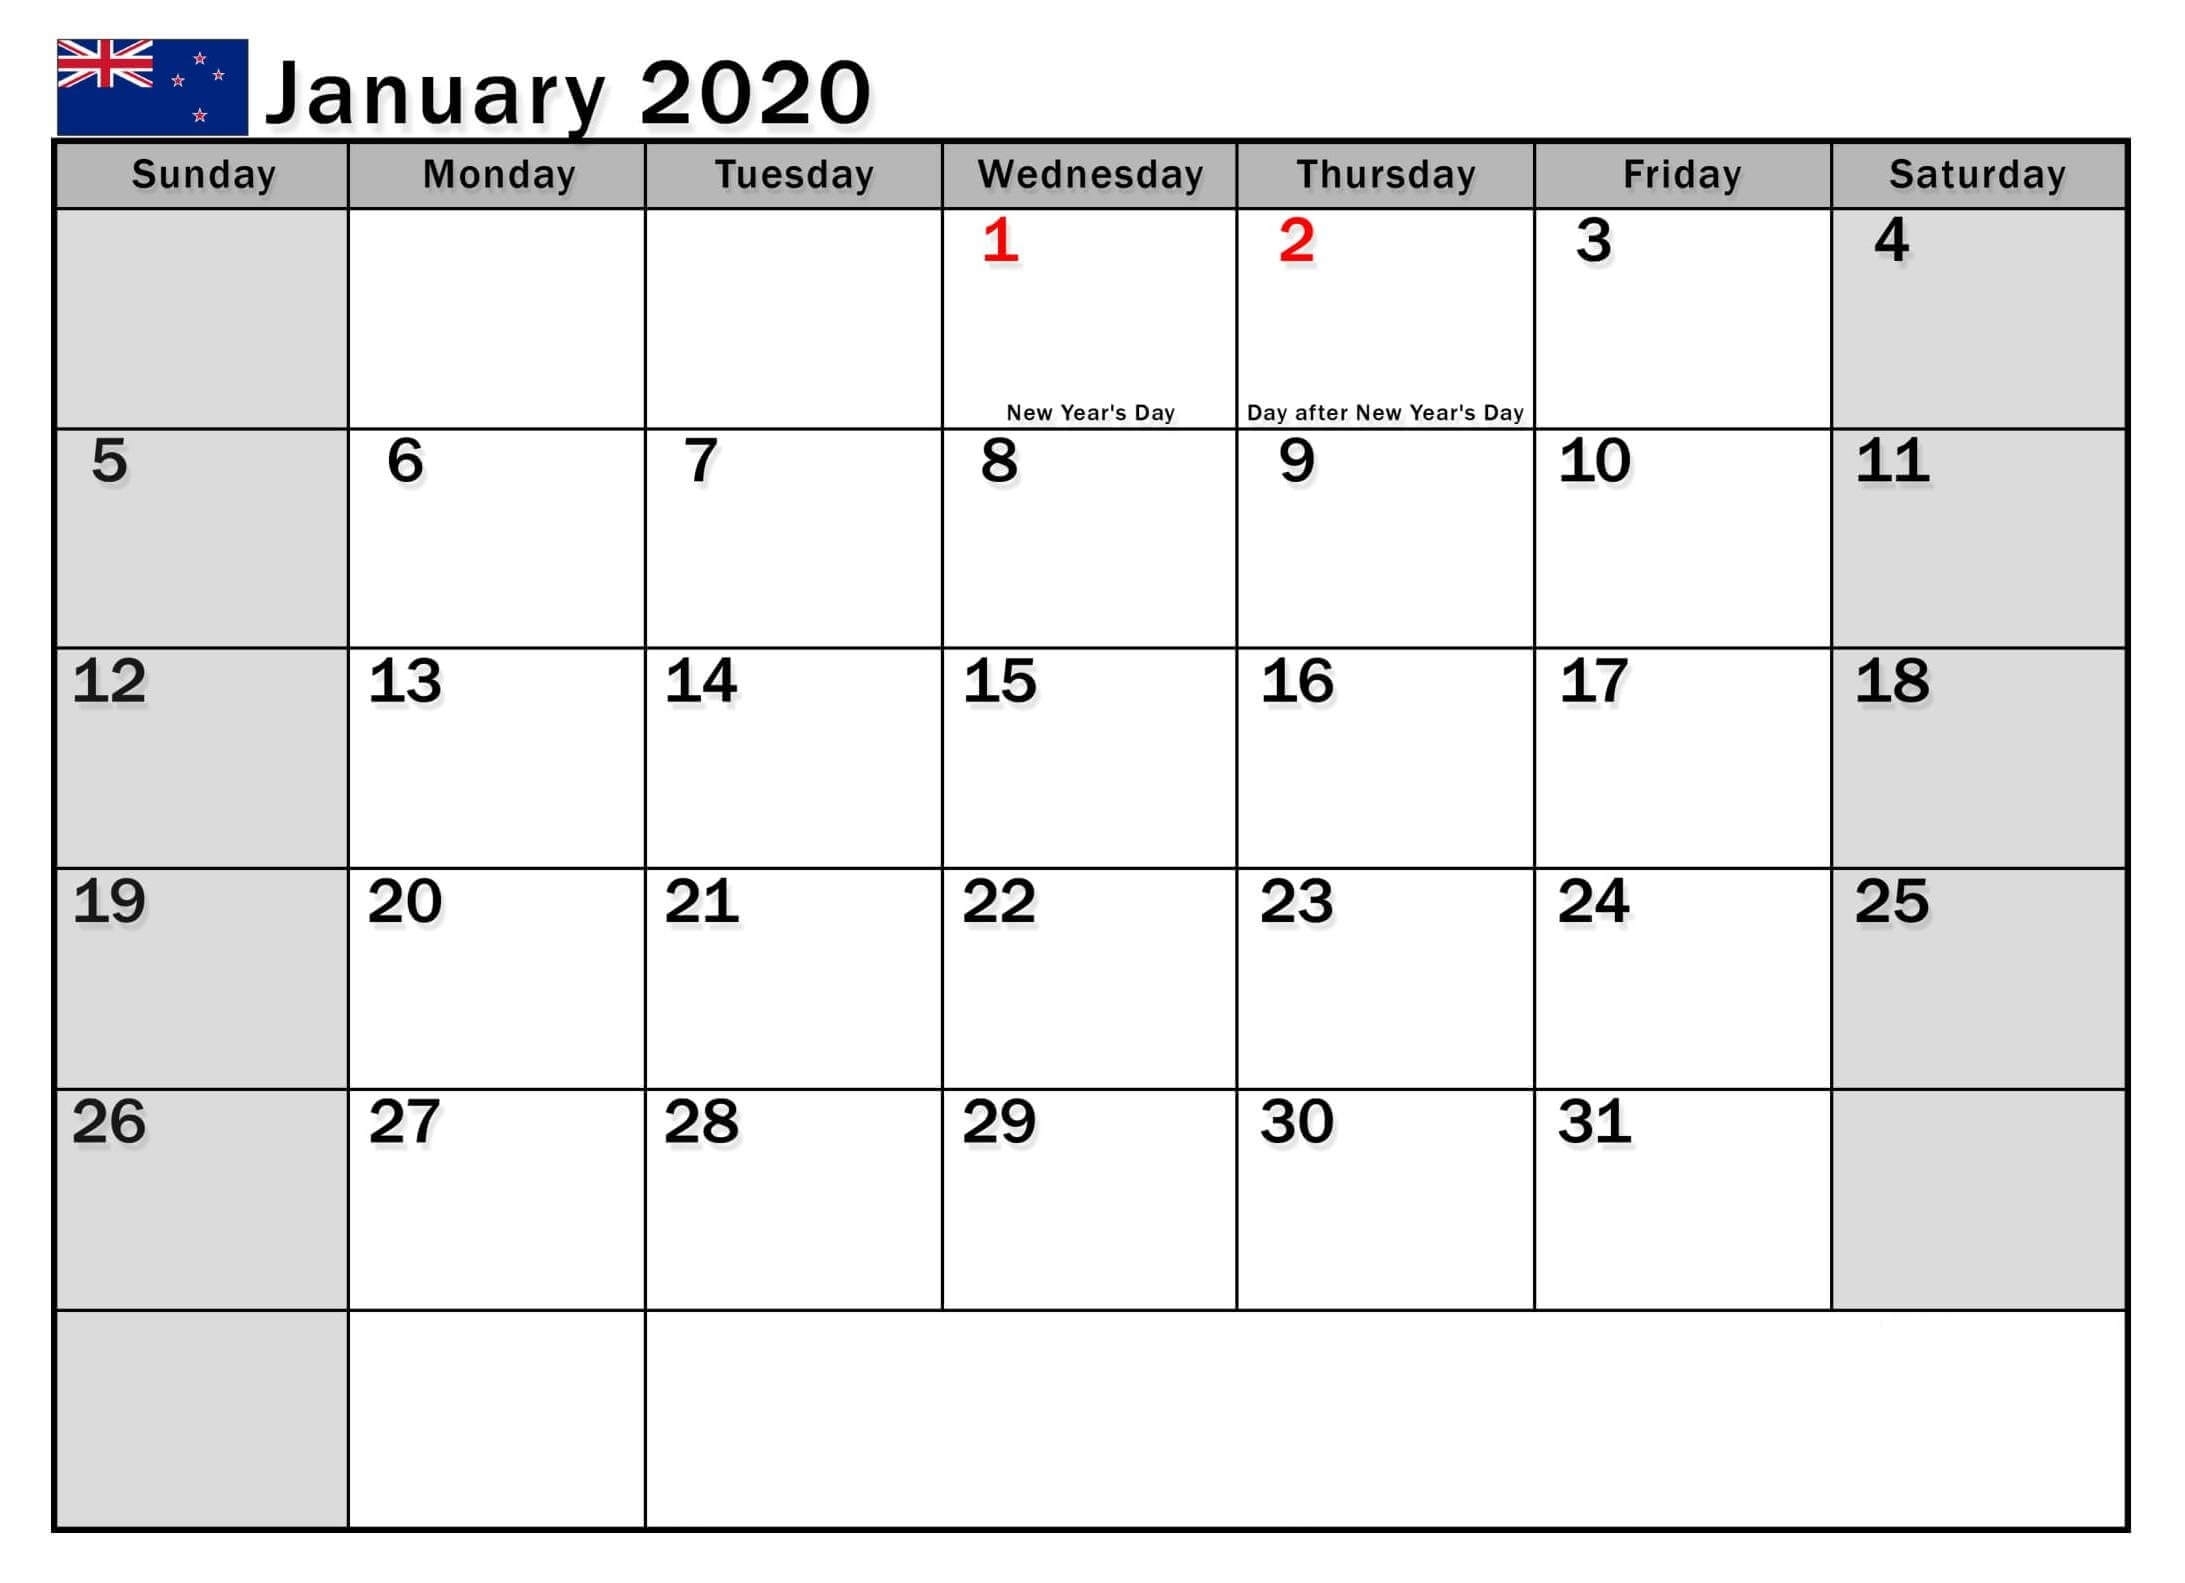 January 2020 Calendar Nz (New Zealand) - 2019 Calendars For